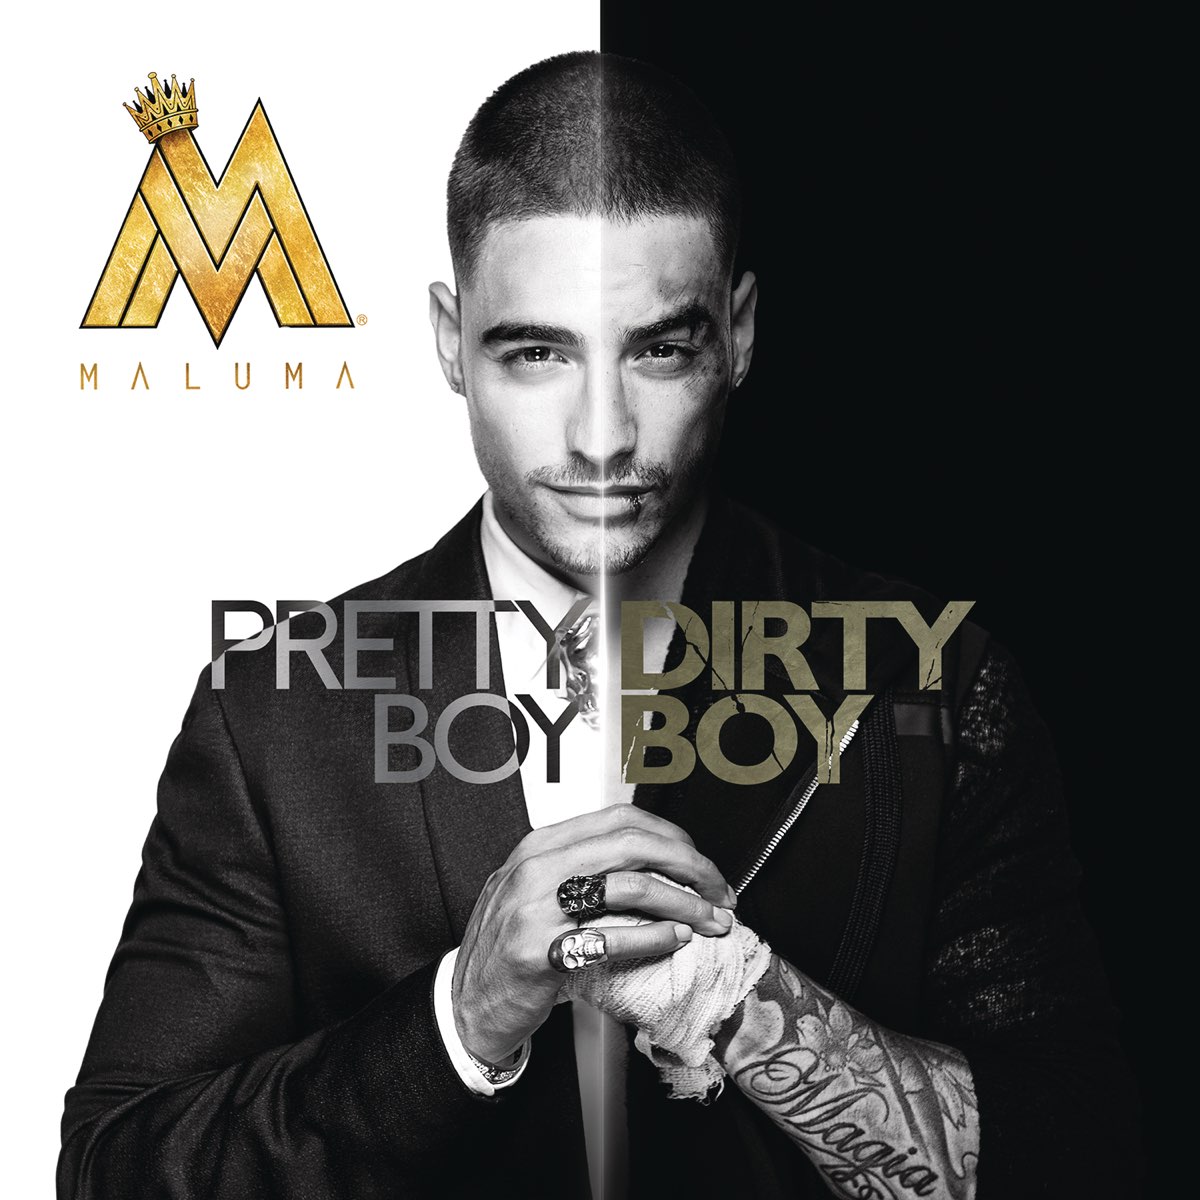 Pretty Boy, Dirty Boy by Maluma on Apple Music